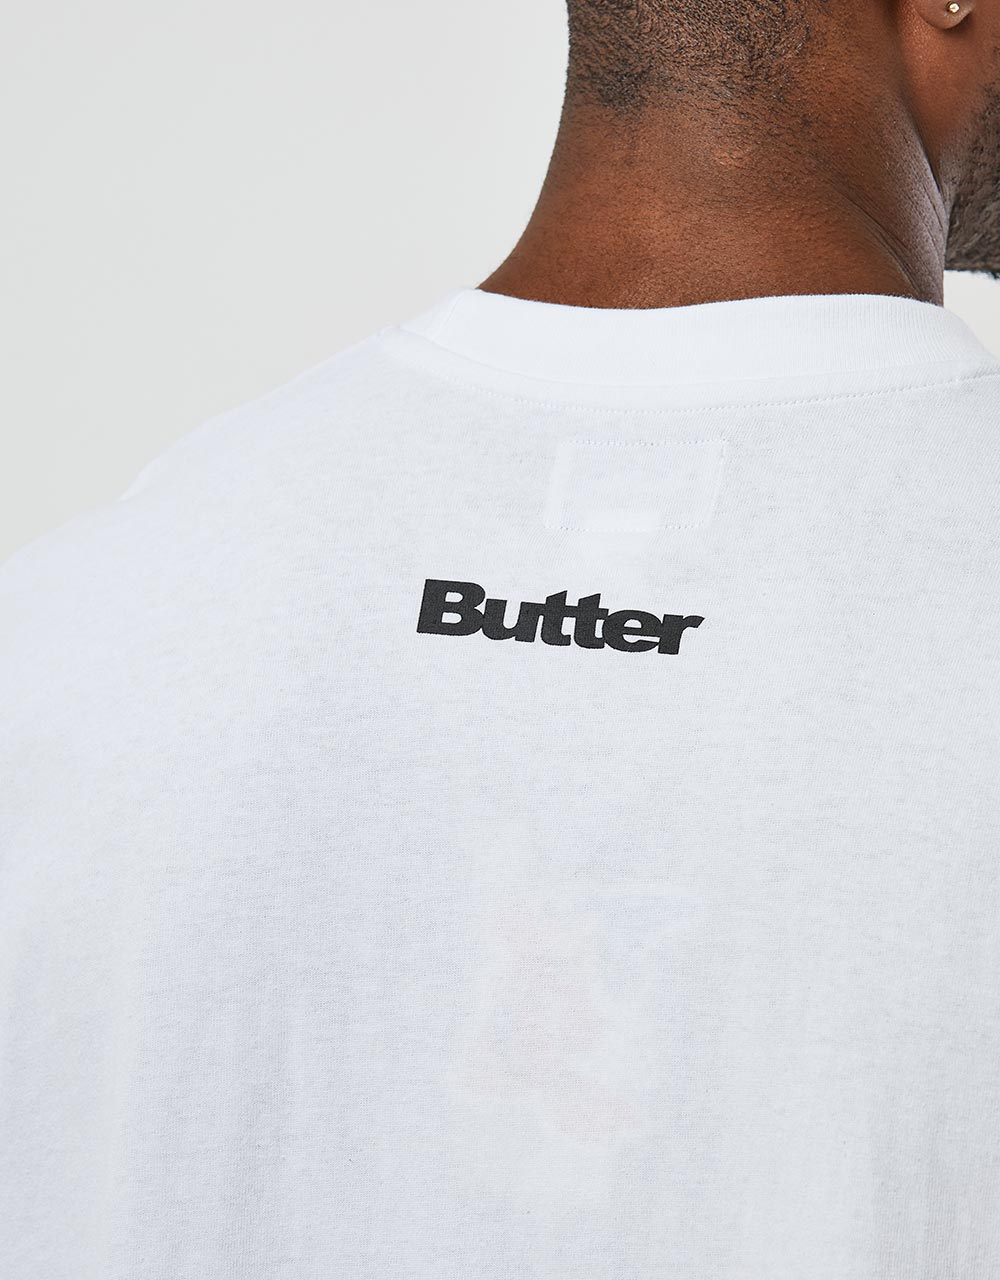 Butter Goods x Disney Fantasia T-Shirt - White